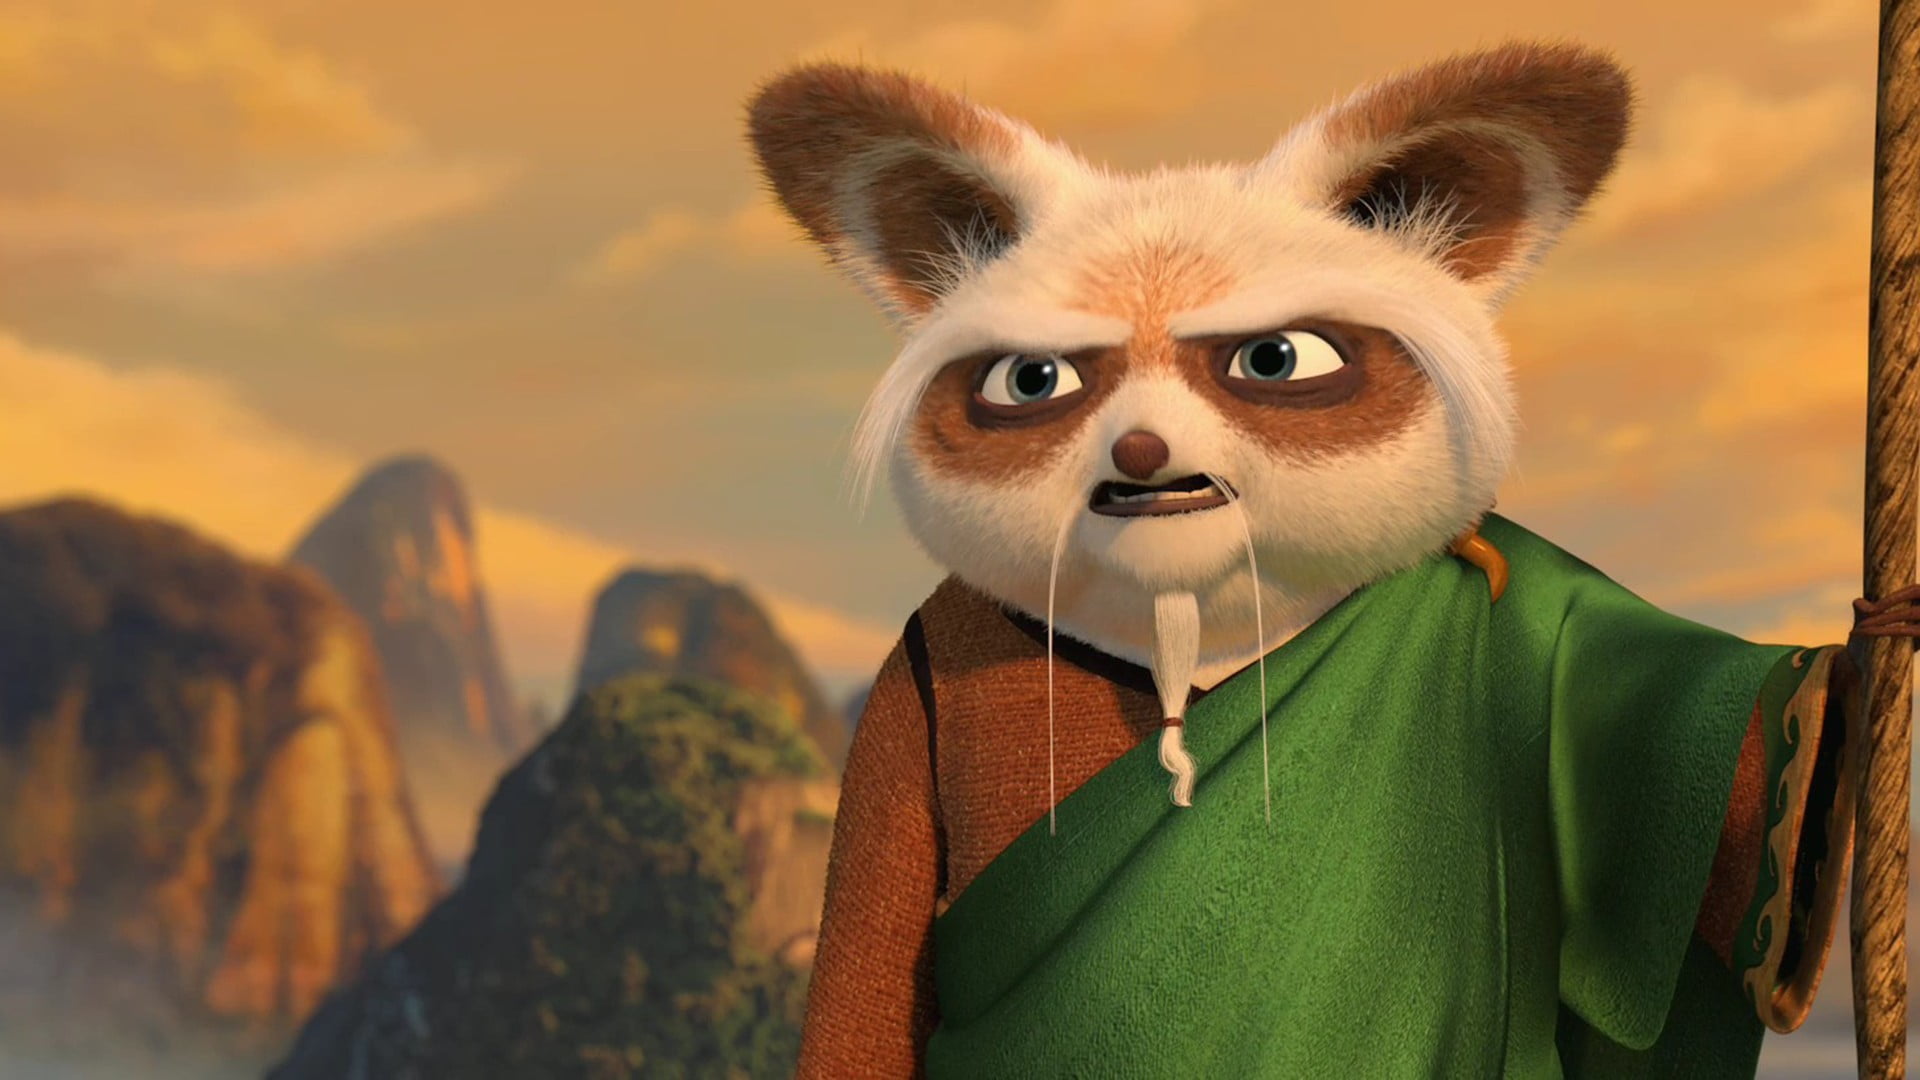 Best Of kung fu panda karakter isimleri Kung-fu panda master shifu ...